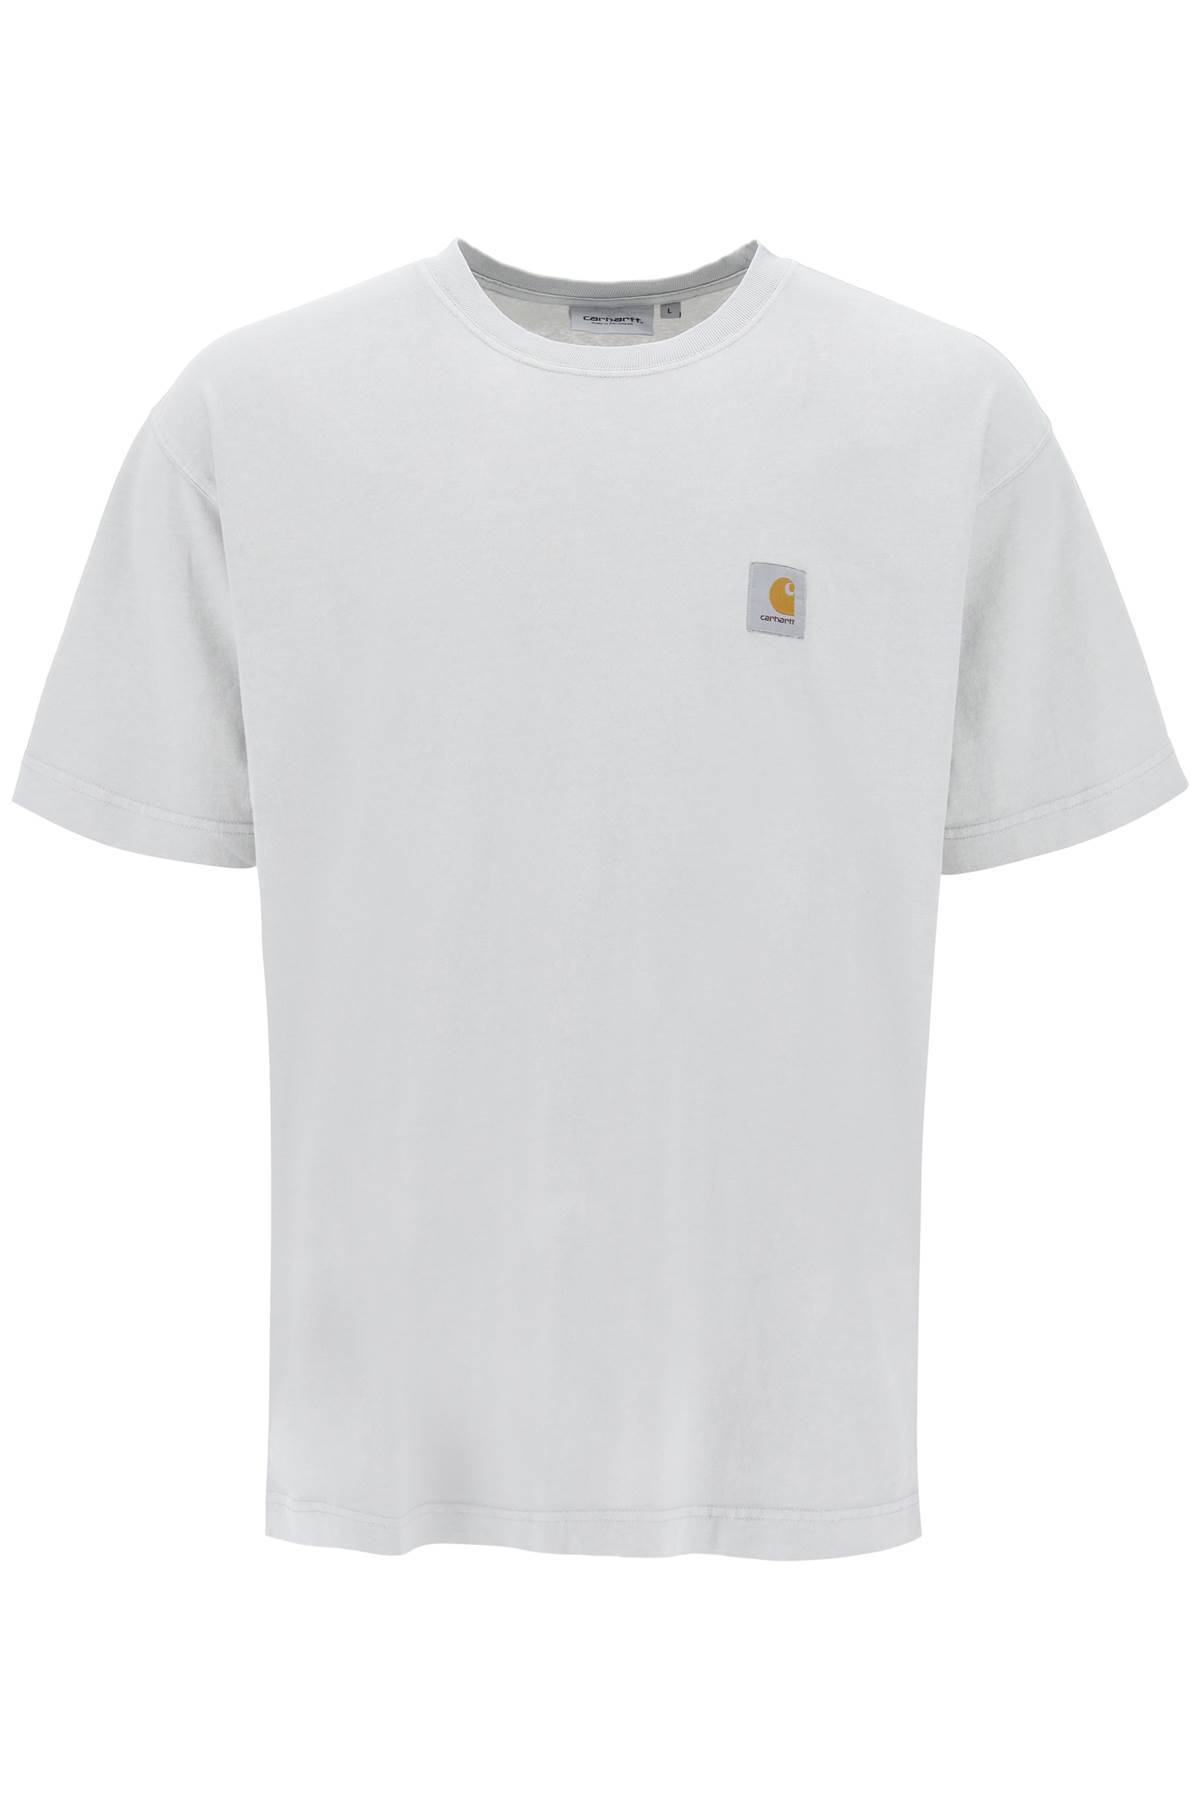 Carhartt WIP CARHARTT WIP nelson t-shirt